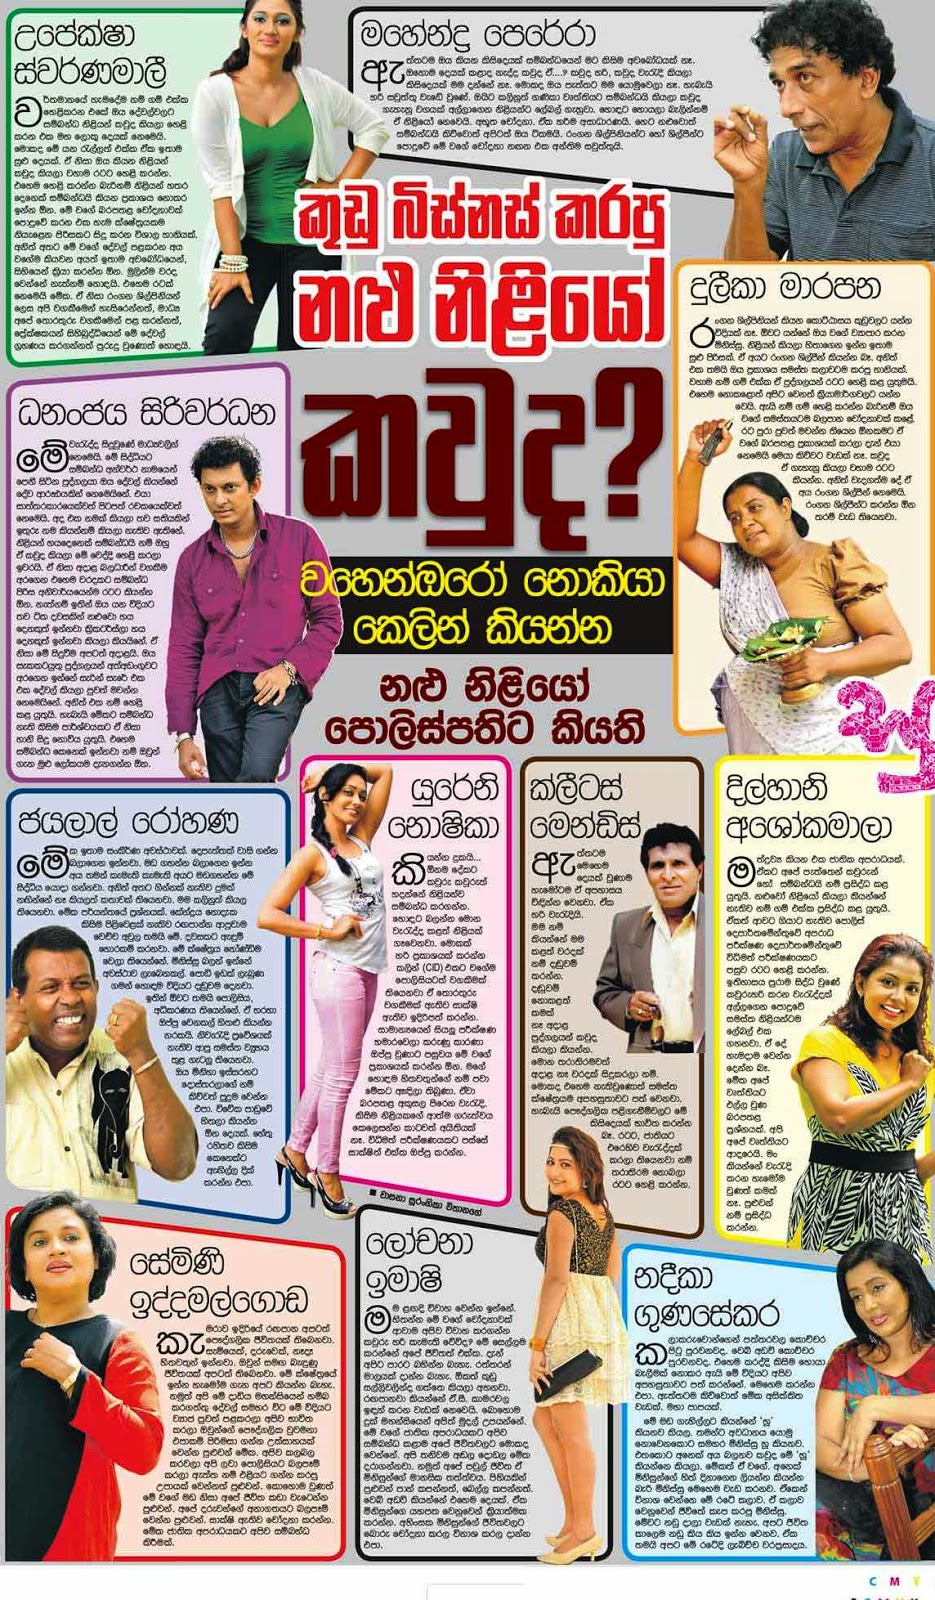 කුඩු නිලියෝ කවුද ? - Sri Lankan actors and actresses | Sri Lanka ...